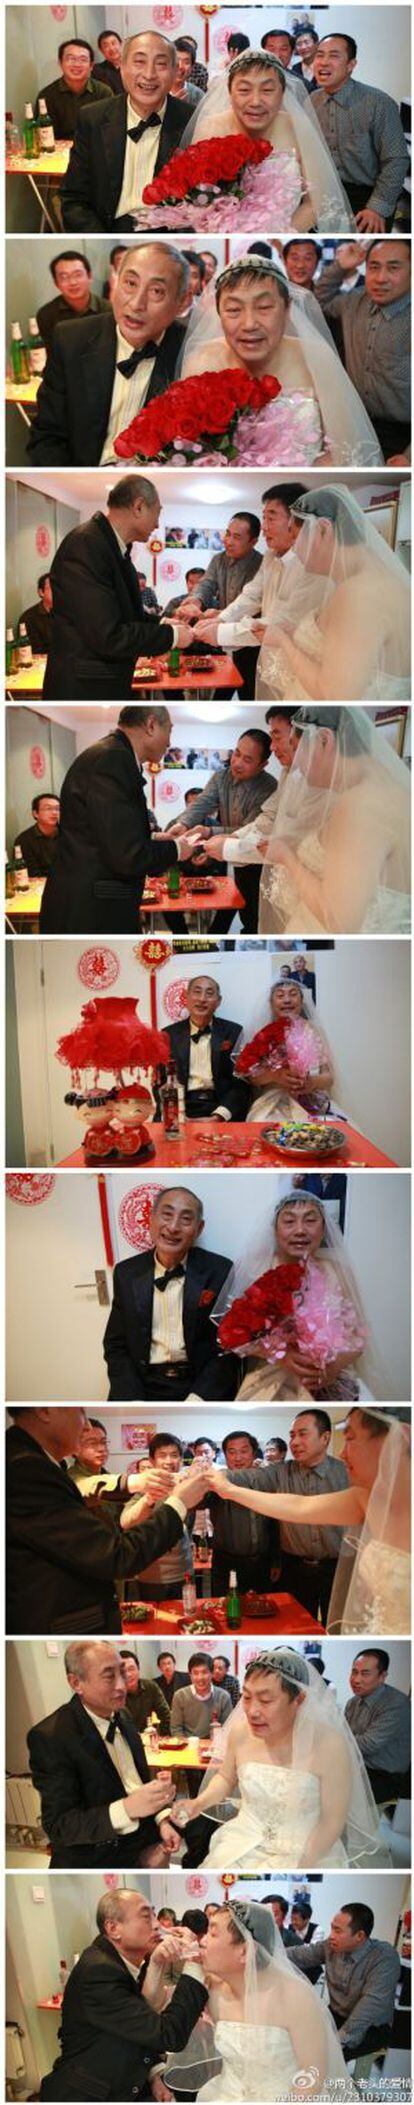 Una secuencia de imágenes del día de la boda de la pareja china conocida como 'Bebé Pequeño' y 'Bebé Grande', difundida por ellos mismos en las redes sociales.